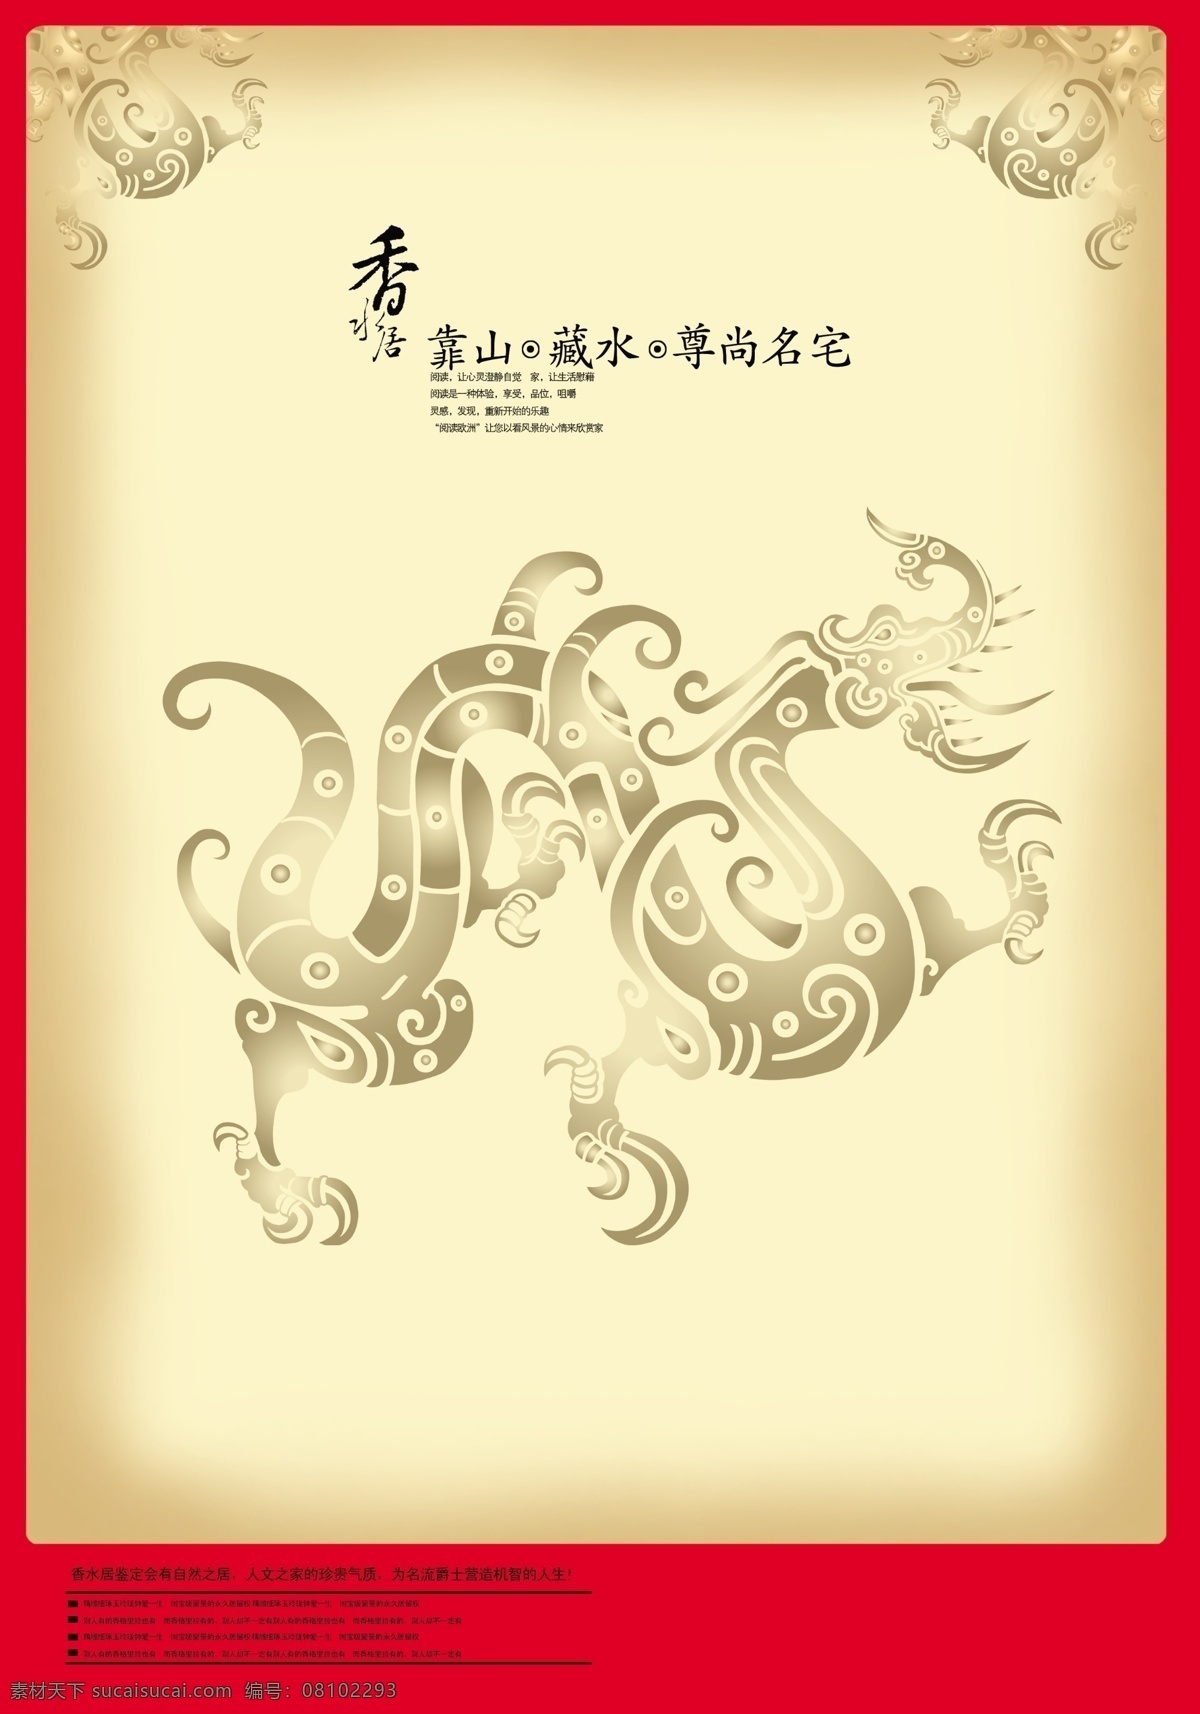 龙 中国素材 中国元素 传统元素 中国传统 中国风 房产广告 中国风房地产